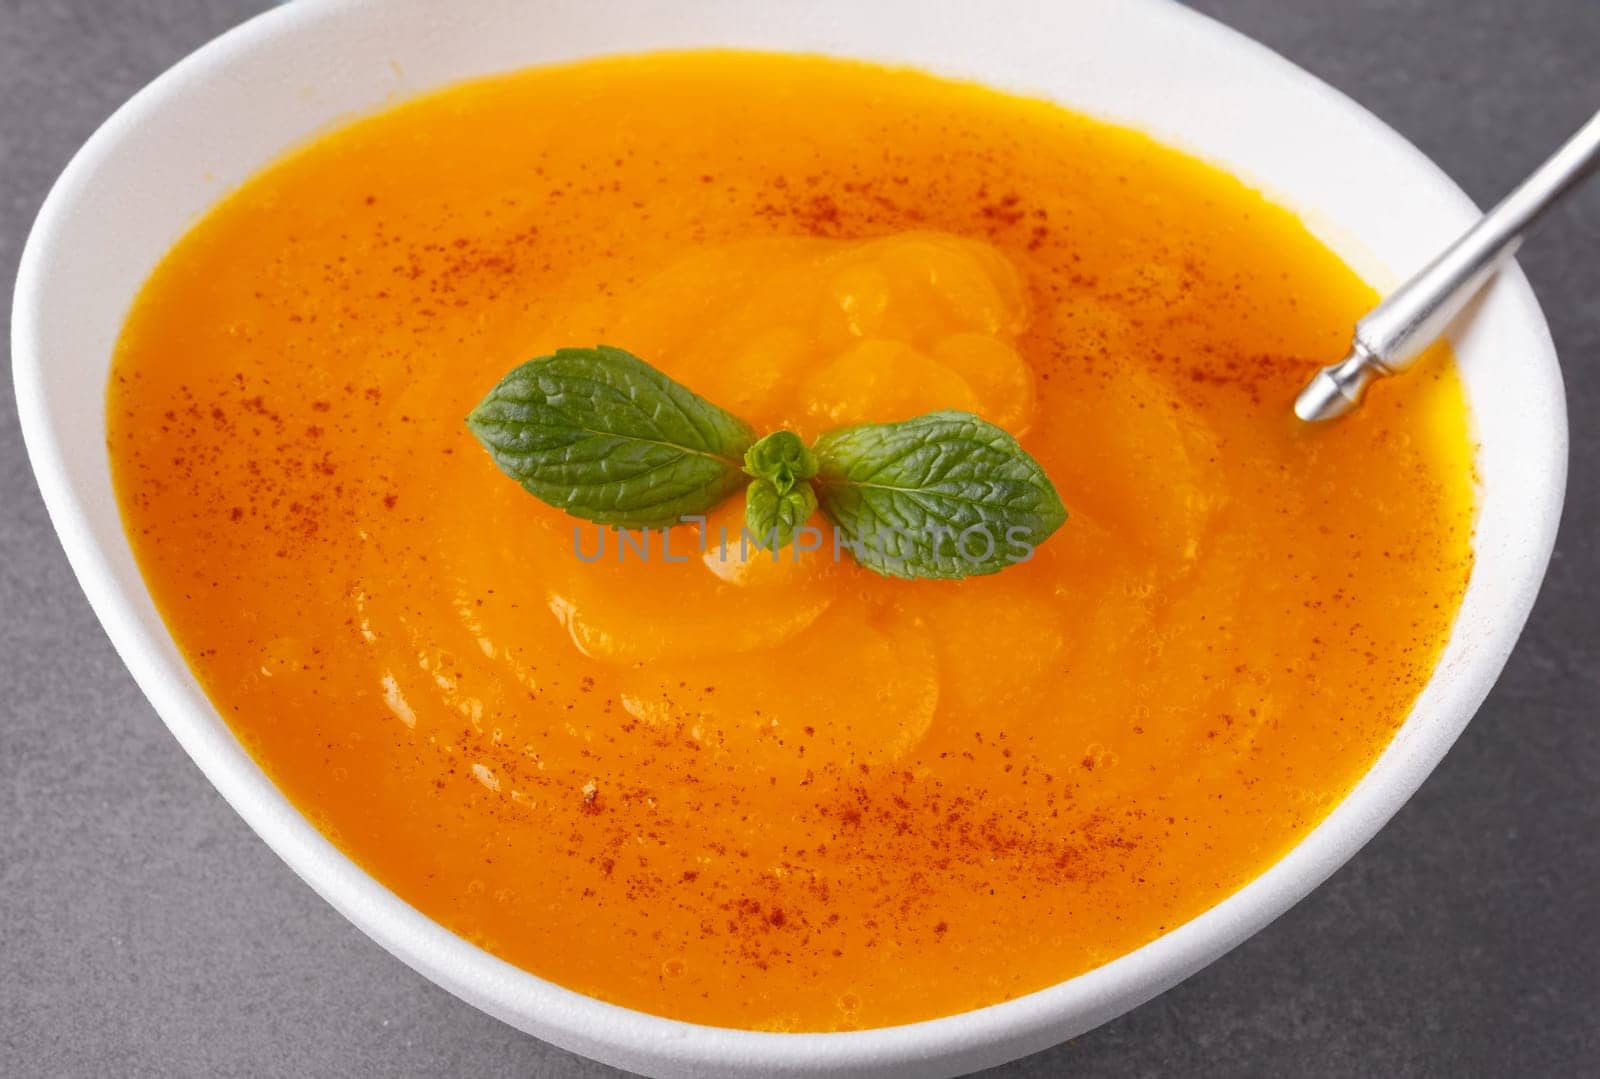 Pumpkin soup on grey background by NataliPopova